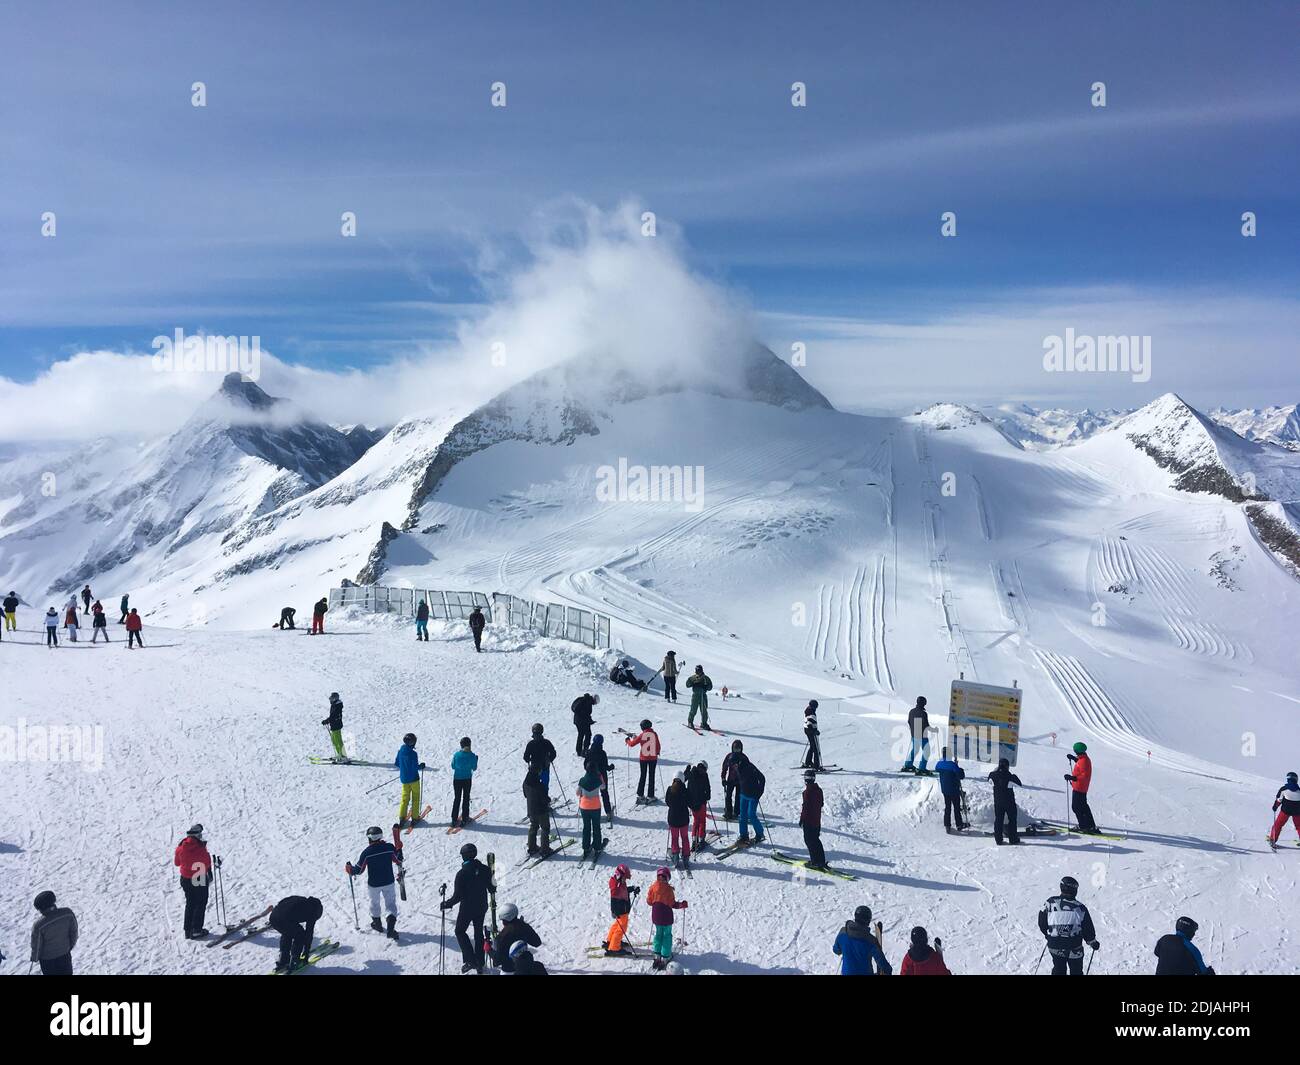 Panorama d'hiver depuis le sommet du Gletscherbus 3 avec les skieurs et le sommet d'Olperer en arrière-plan, glacier Hintertux, Mayrhofen, Tyrol, Autriche Banque D'Images